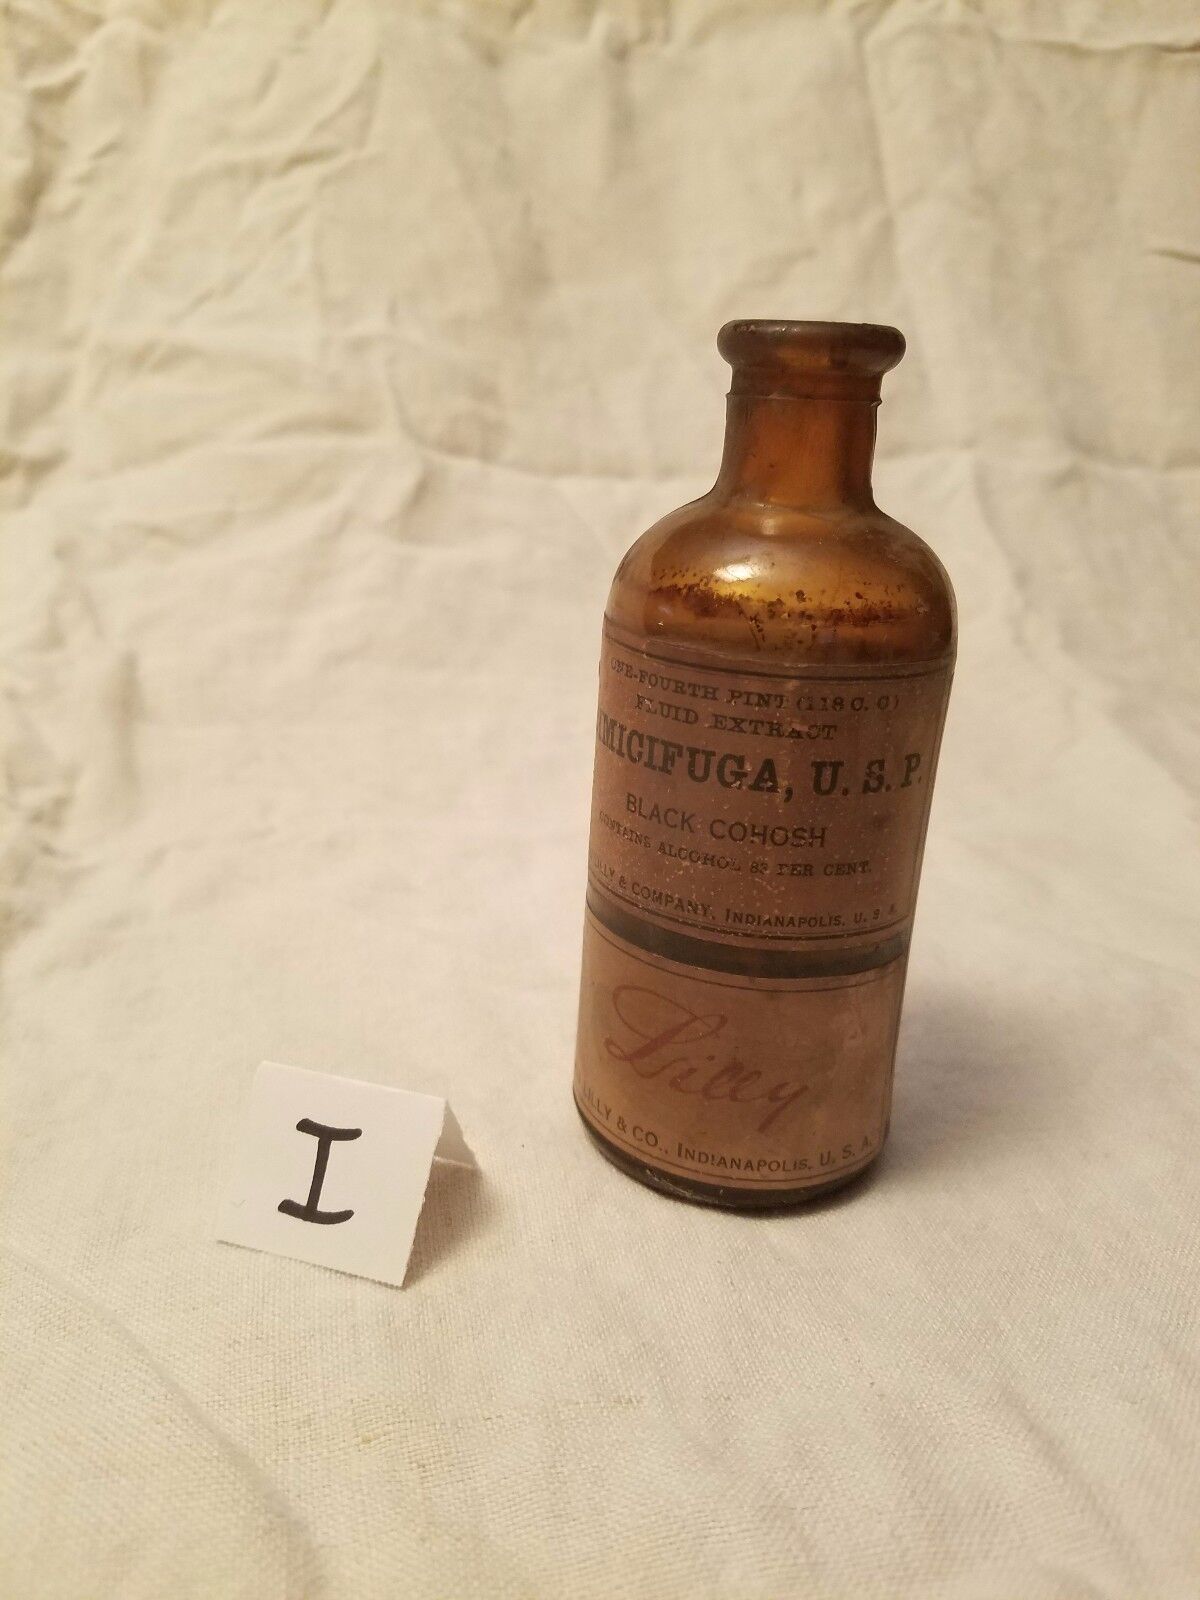 Vintage amber Eli Lilly Cimicifuga U.S.P. Black Cohosh apothecary bottle